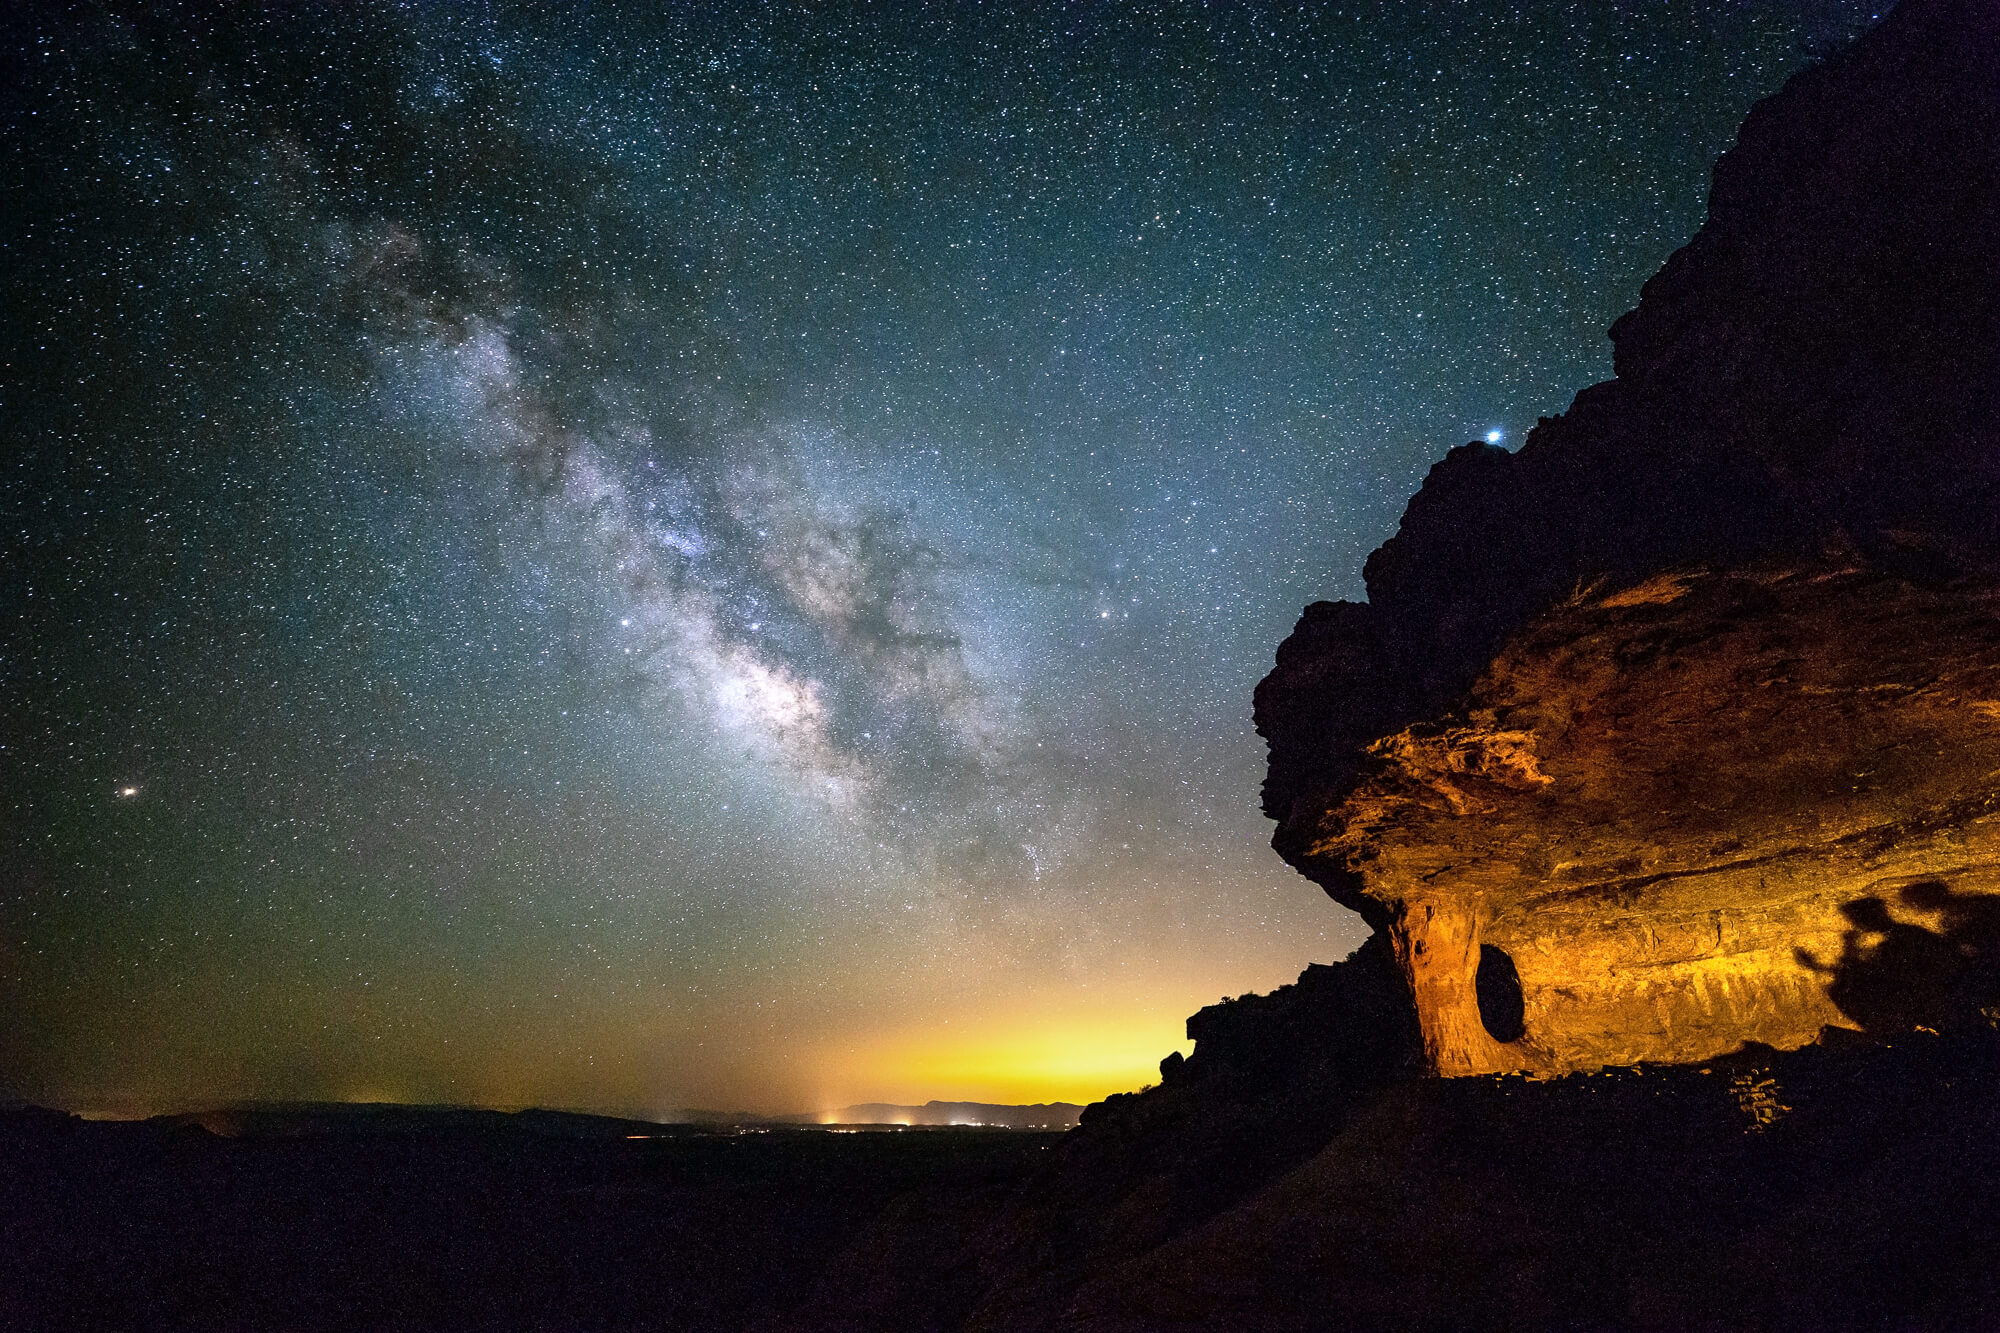 Future-Dreams-Milky-Way-Sedona-Arizona_MG_3255.jpg